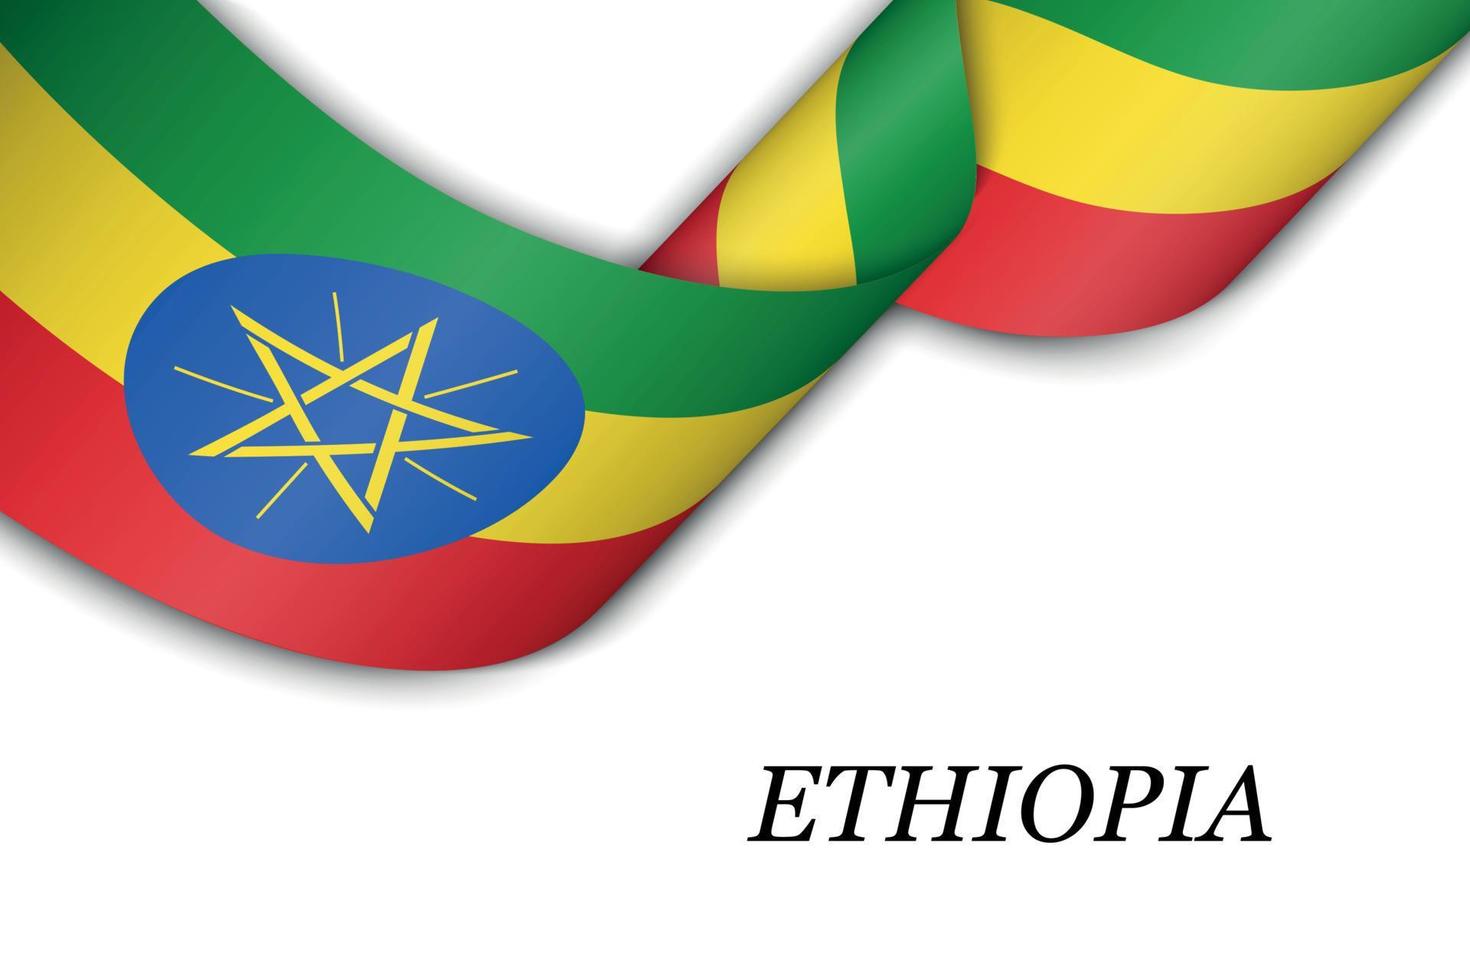 sventolando il nastro o lo striscione con la bandiera dell'Etiopia. vettore